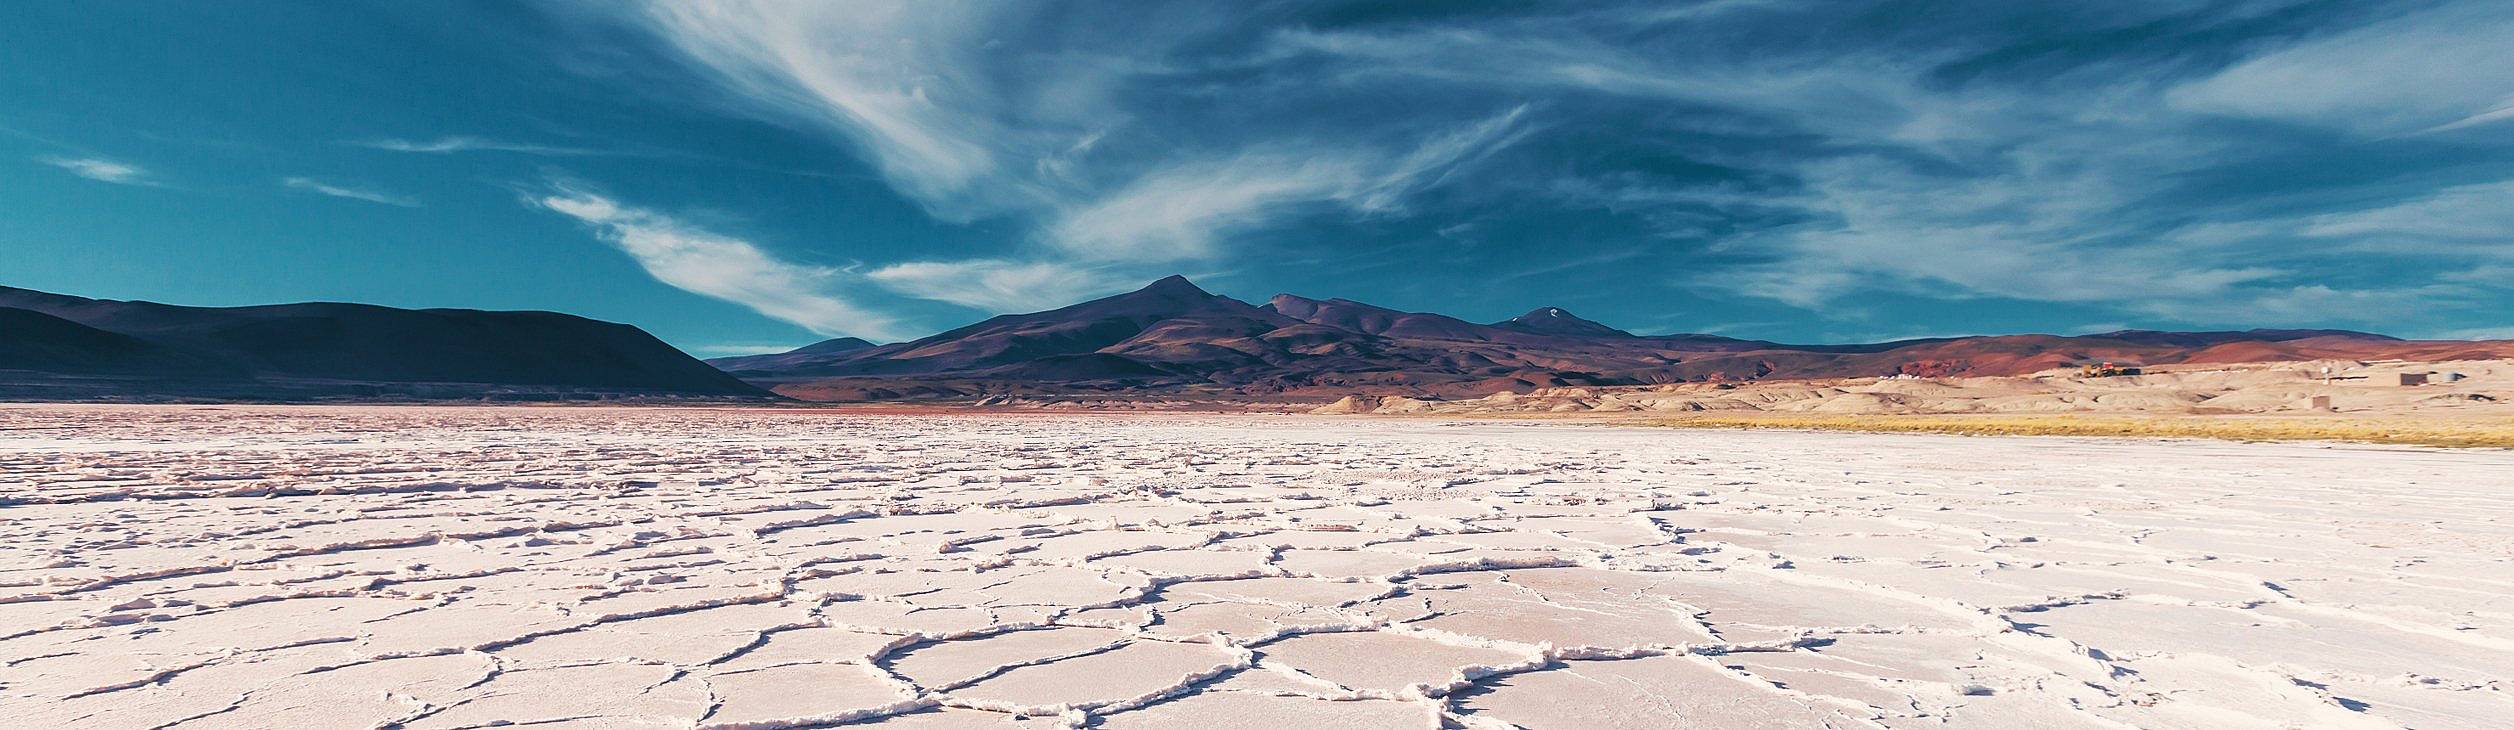 Individuelle Wüstentouren Argentinien - Reise jetzt individuell gestalten